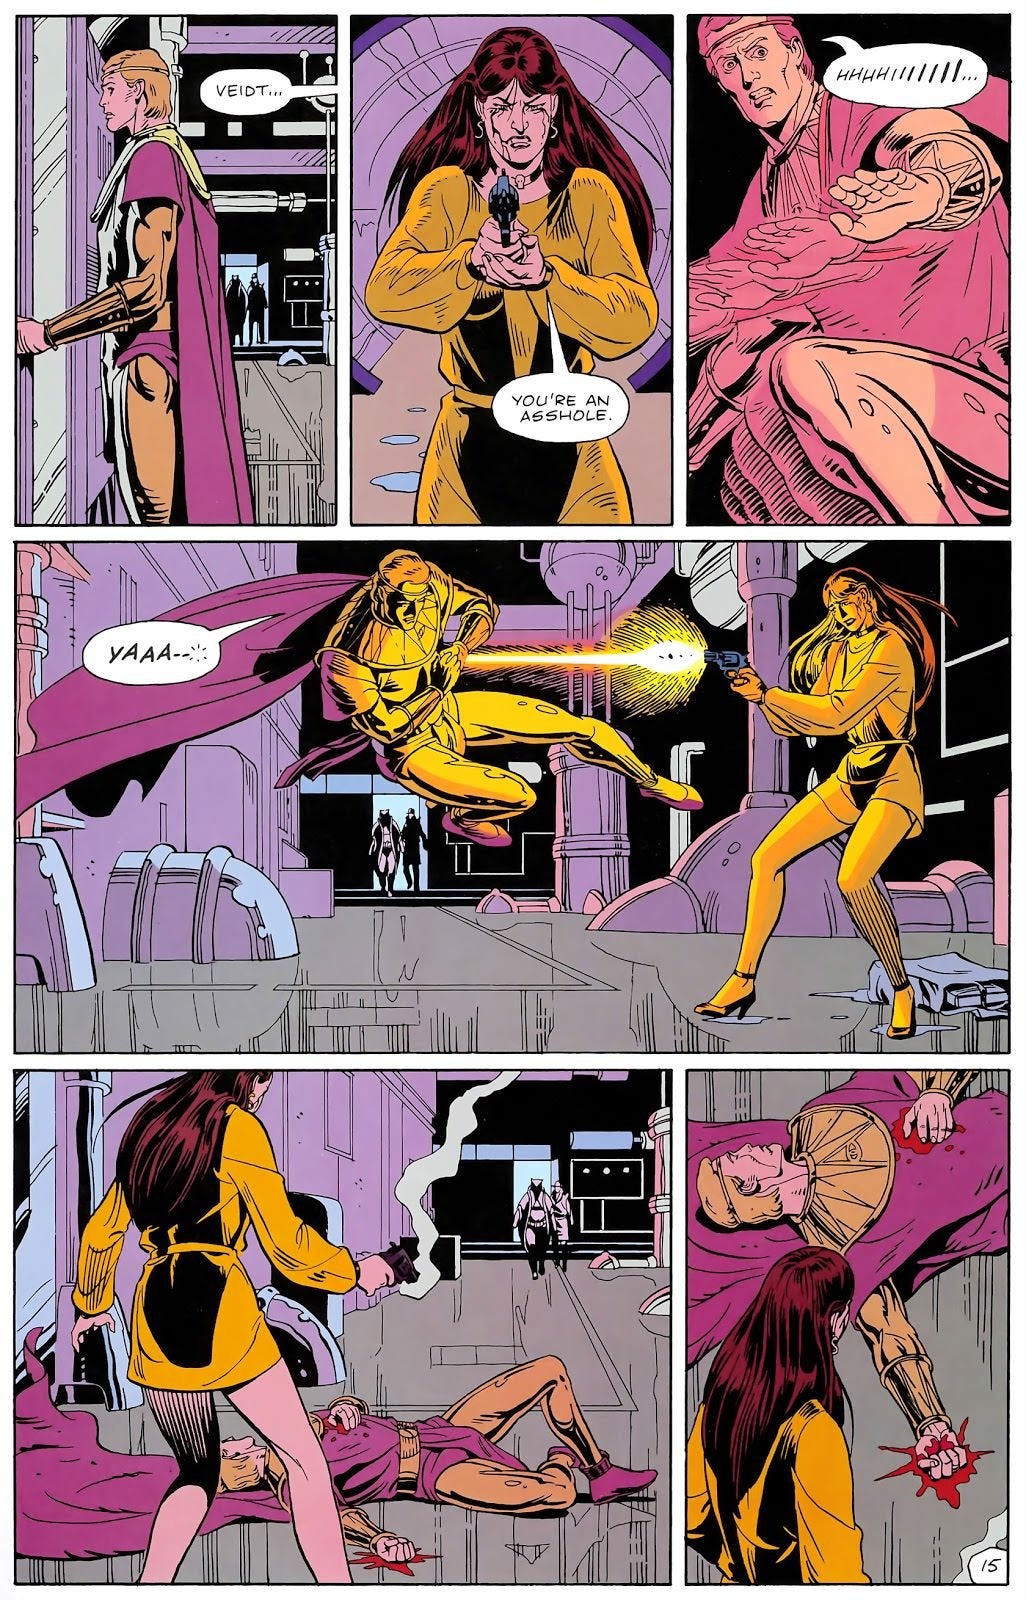 Ozymandias catches a bullet in the original Watchmen comic